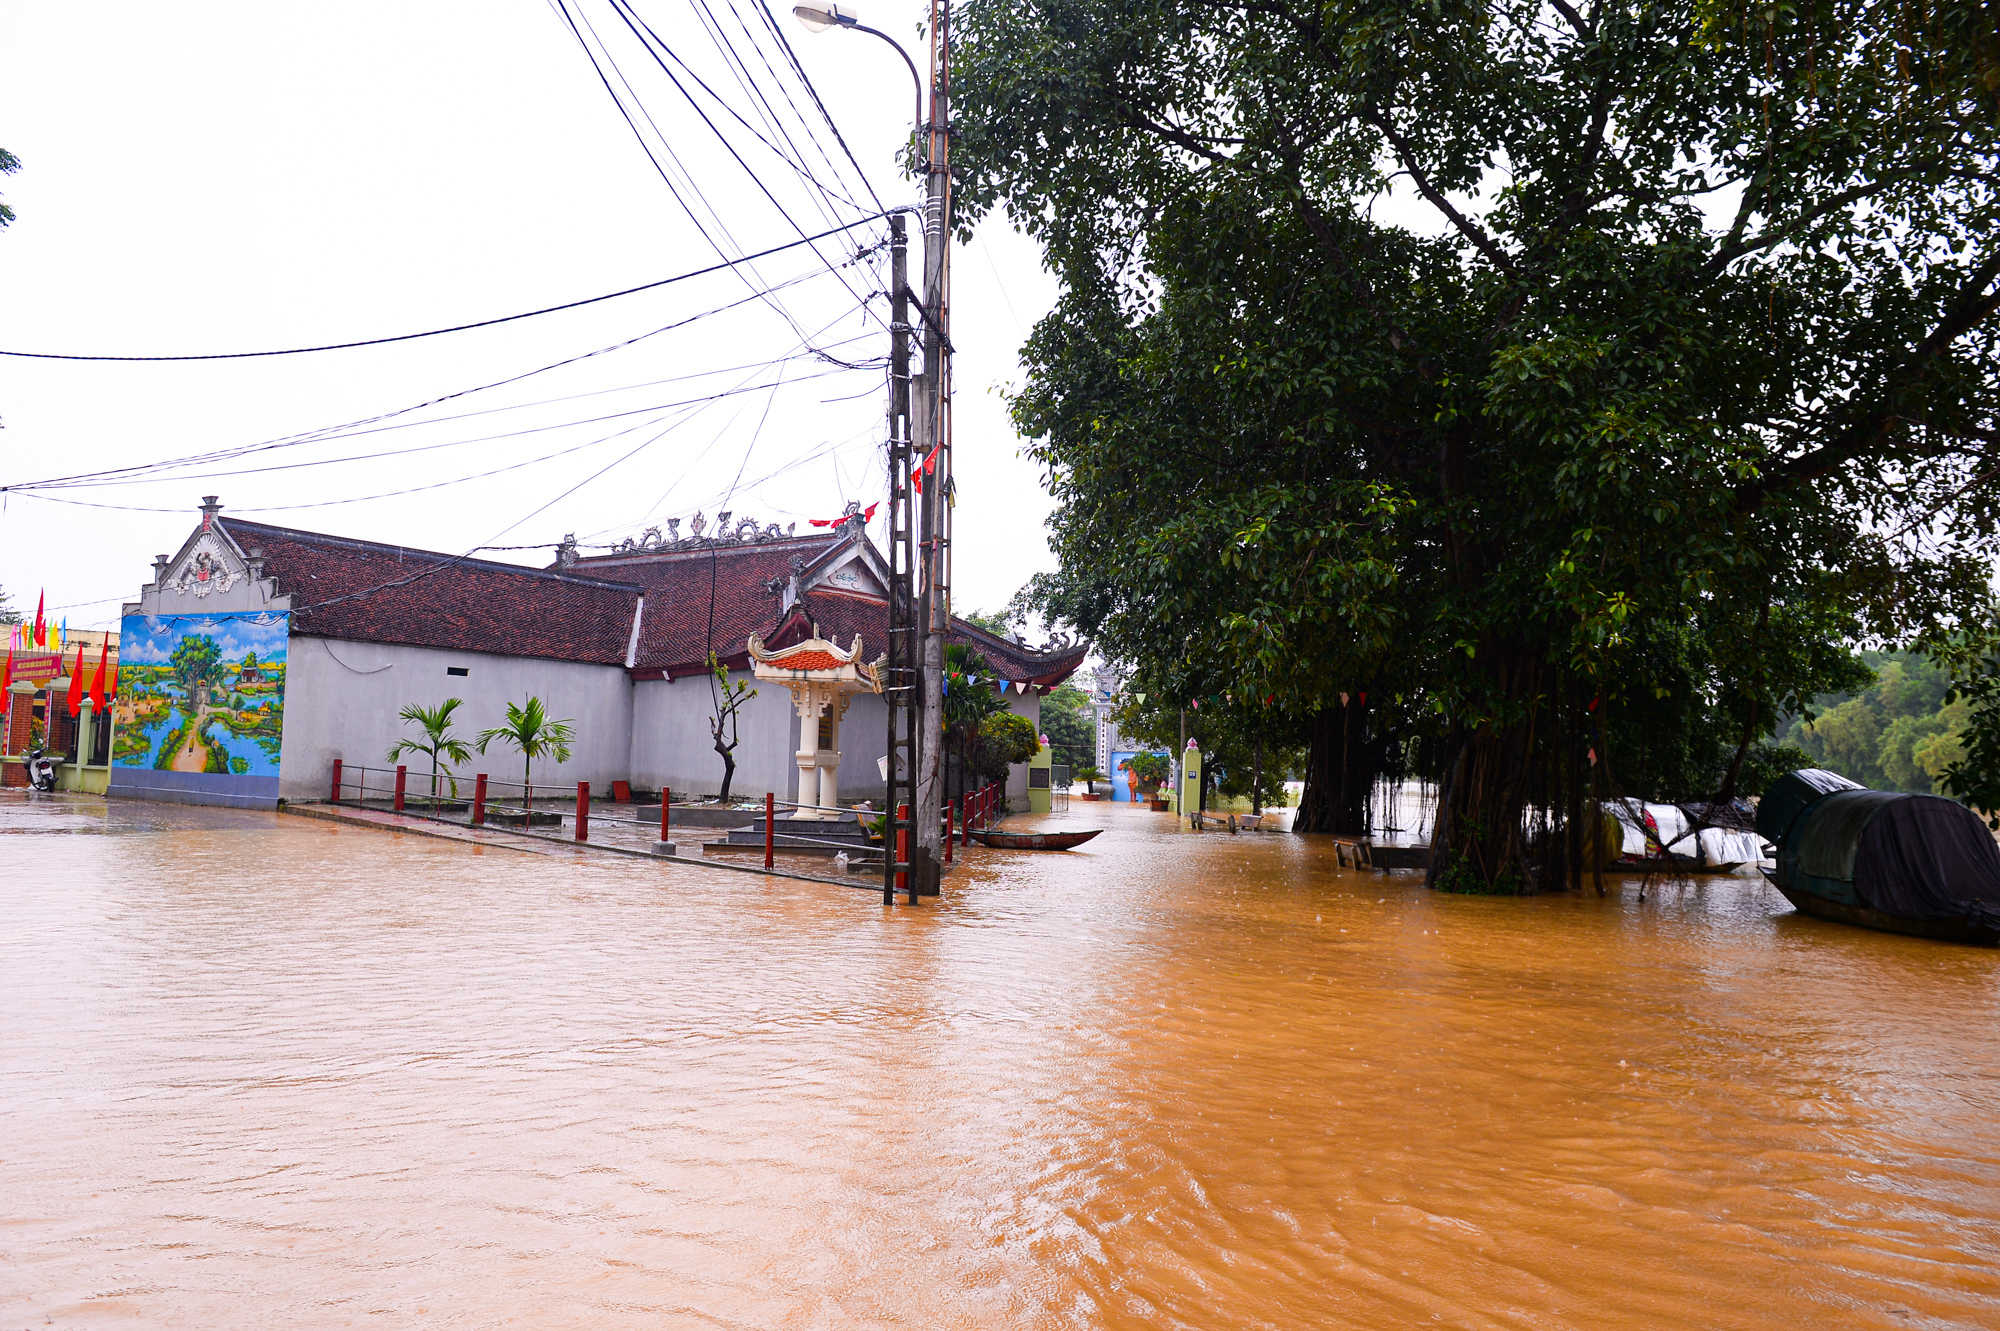 Người dân ngoại thành Hà Nội bì bõm trong nước lũ sau cơn mưa lớn: &quot;Nước lũ lên nhanh quá, chúng tôi chạy đồ không kịp&quot; - Ảnh 2.